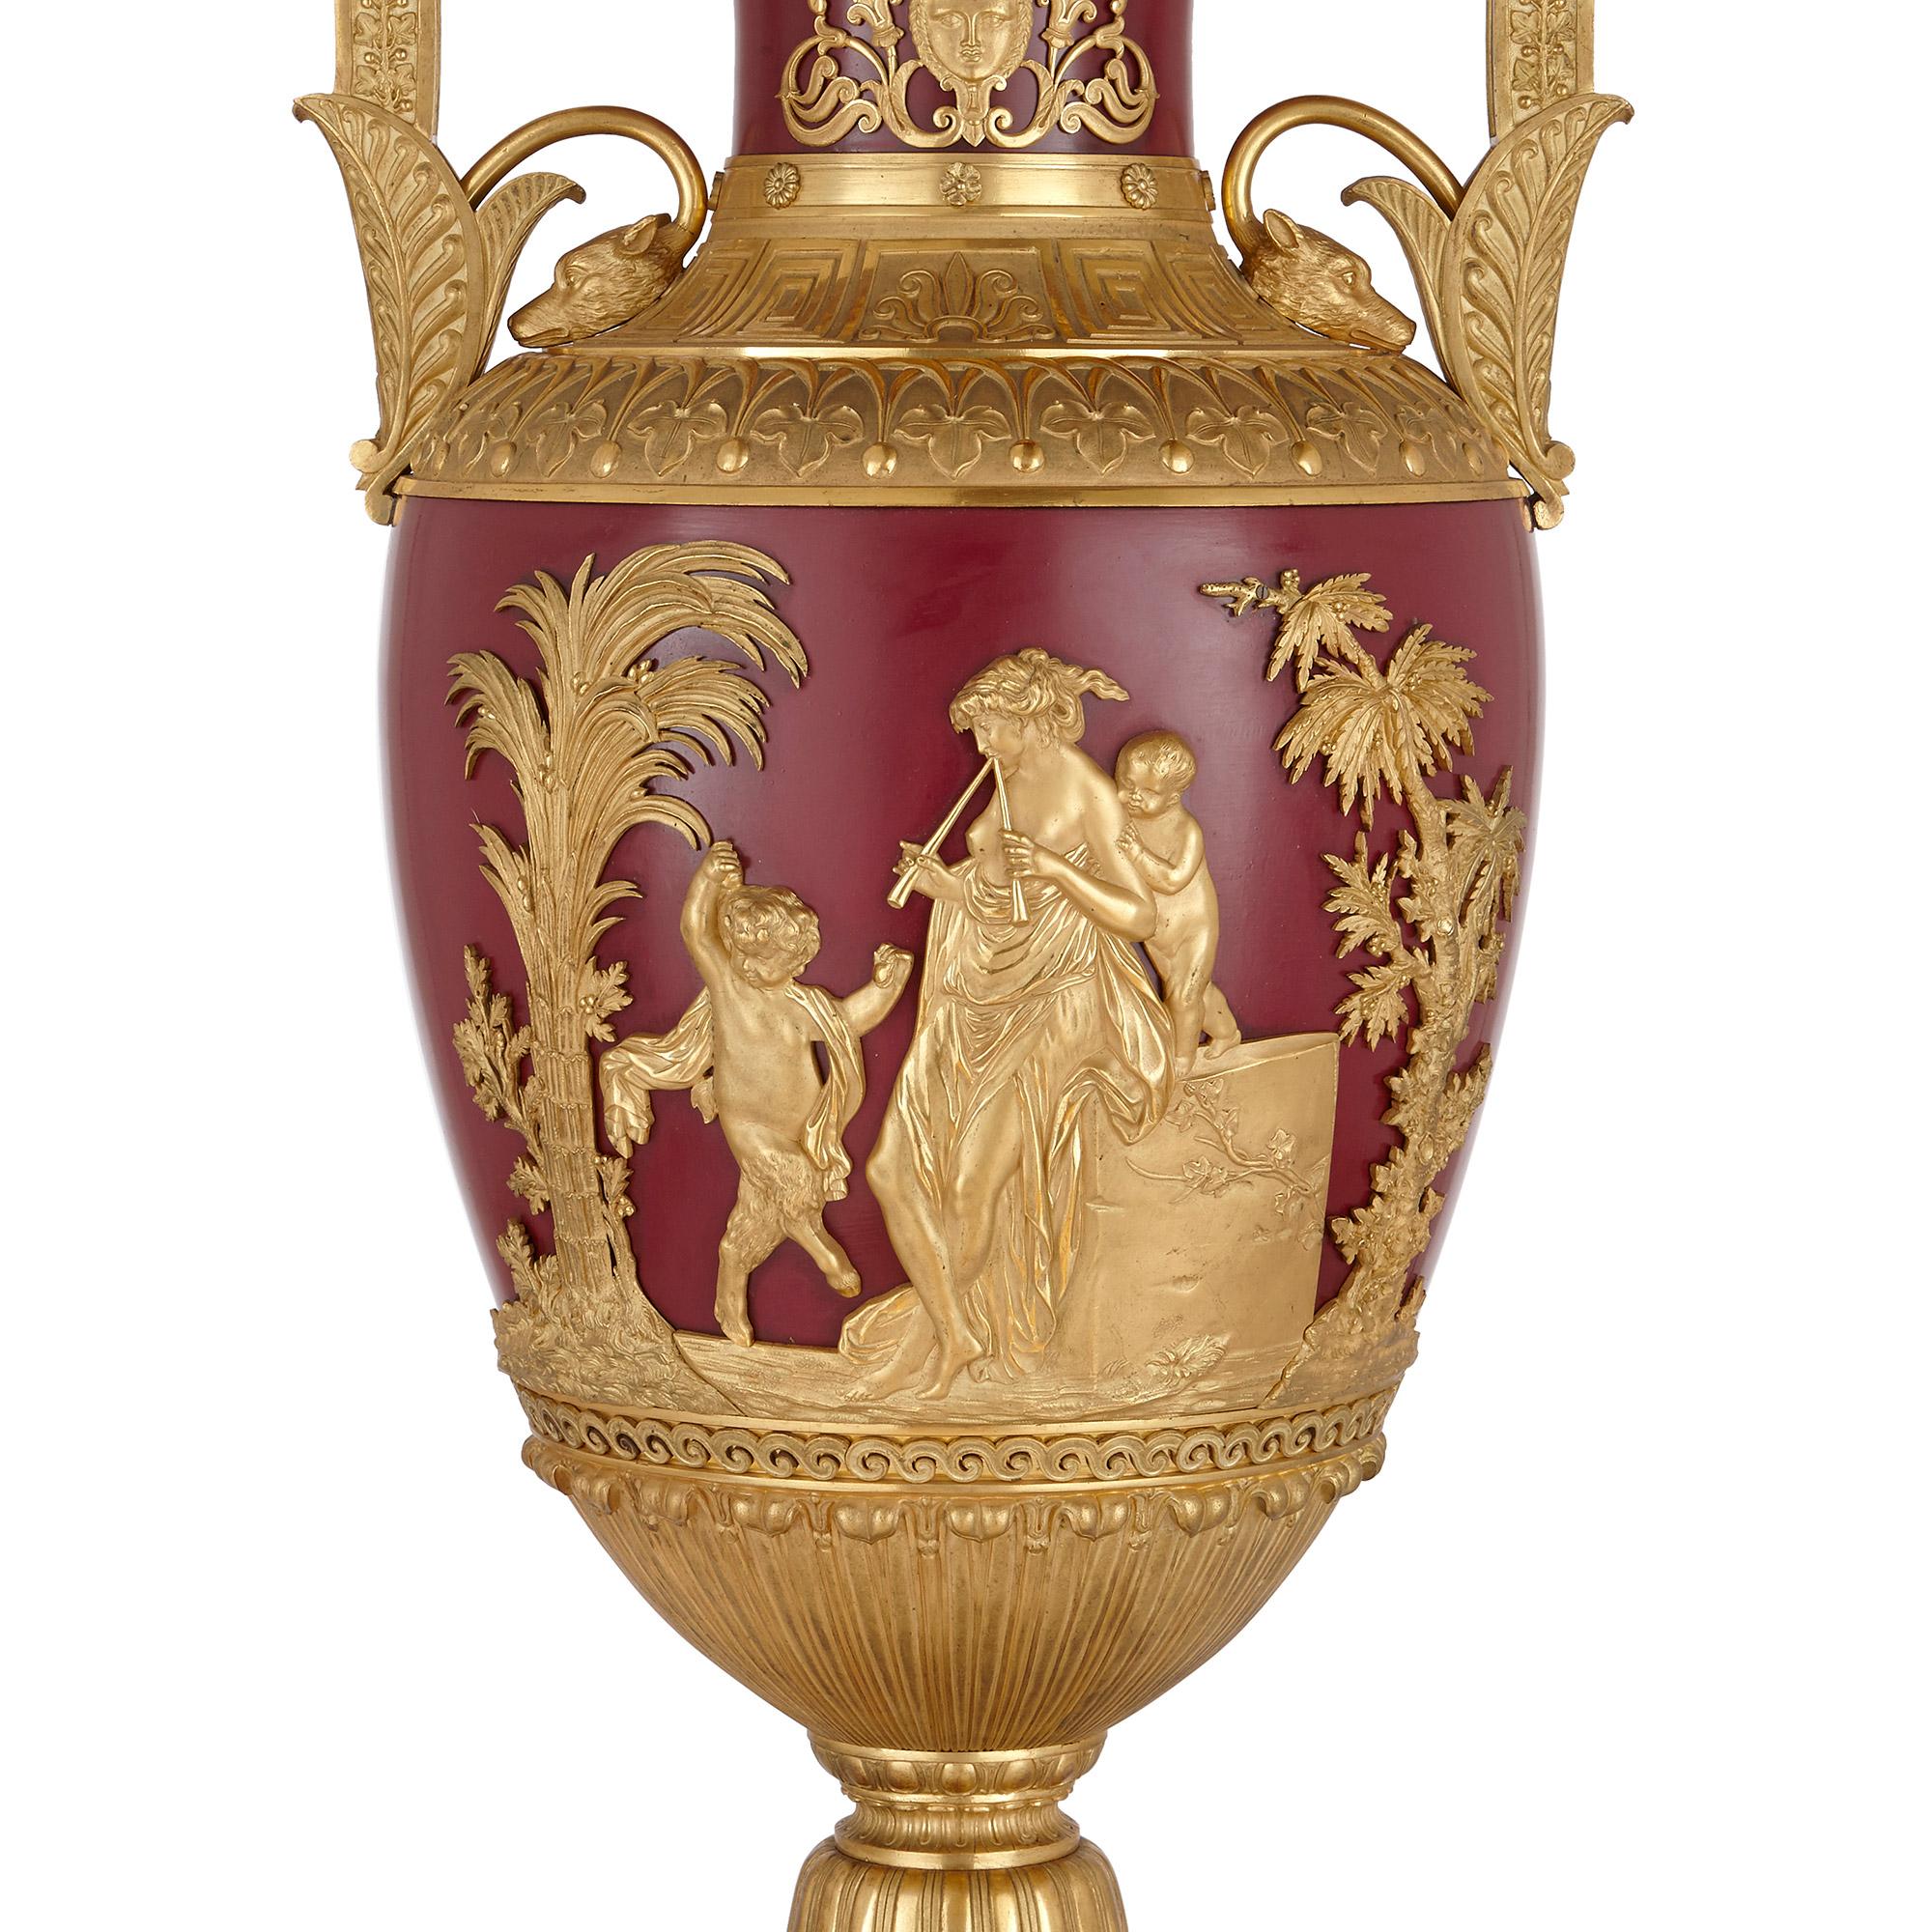 Paire d'importants vases russes en bronze doré et en métal
Russe, vers 1820
Dimensions : Hauteur 98 cm, largeur 43 cm, profondeur 38 cm

Cette paire de vases monumentaux a été réalisée de manière exquise en bronze doré et en métal. Ils